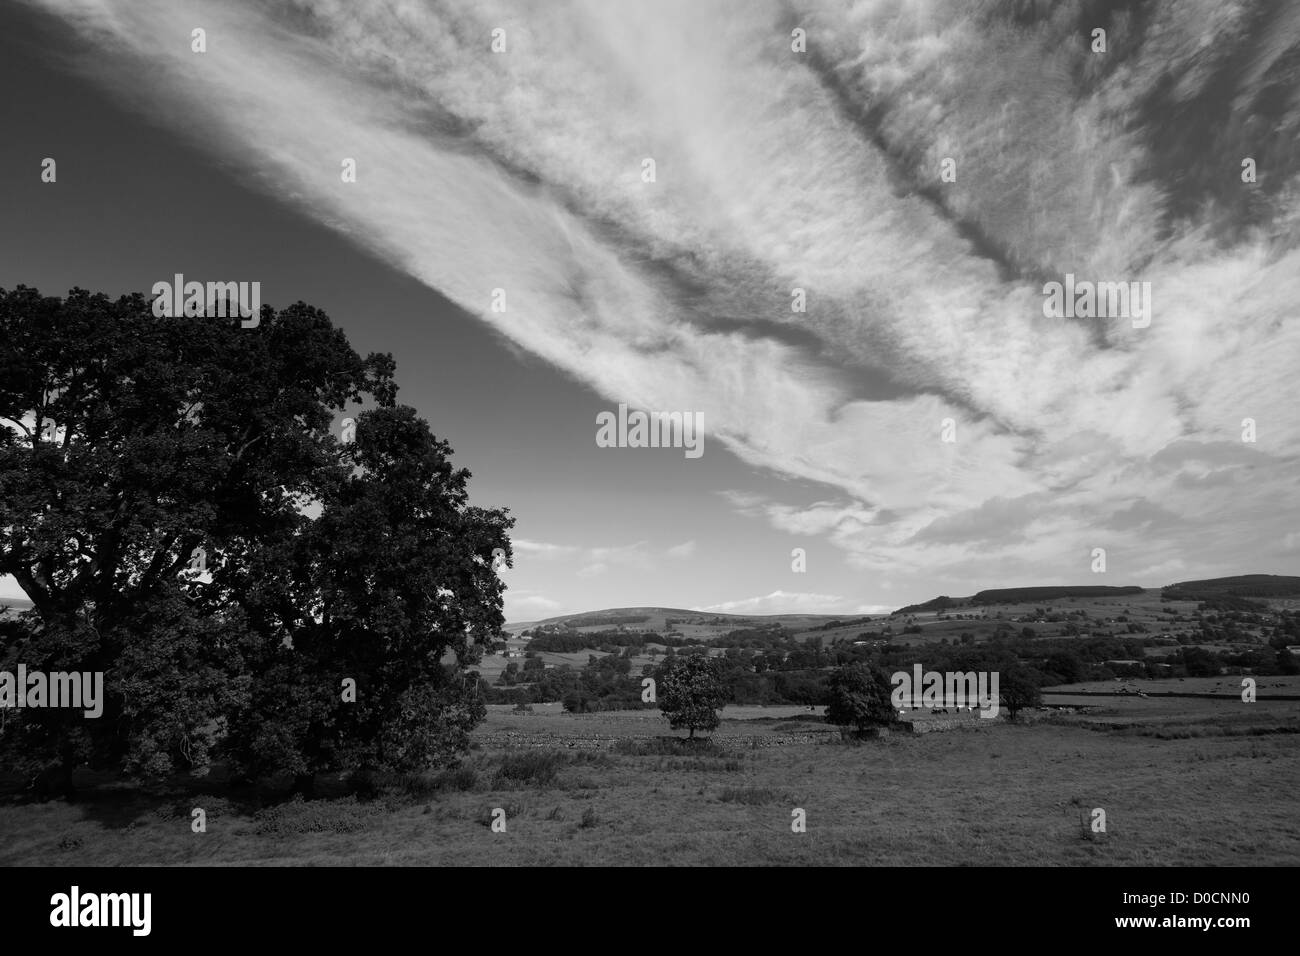 Le noir et blanc paysage panoramique vue sur Middleton Teesdale, dans le comté de Durham, de Teesdale, Angleterre, Grande-Bretagne, Royaume-Uni Banque D'Images